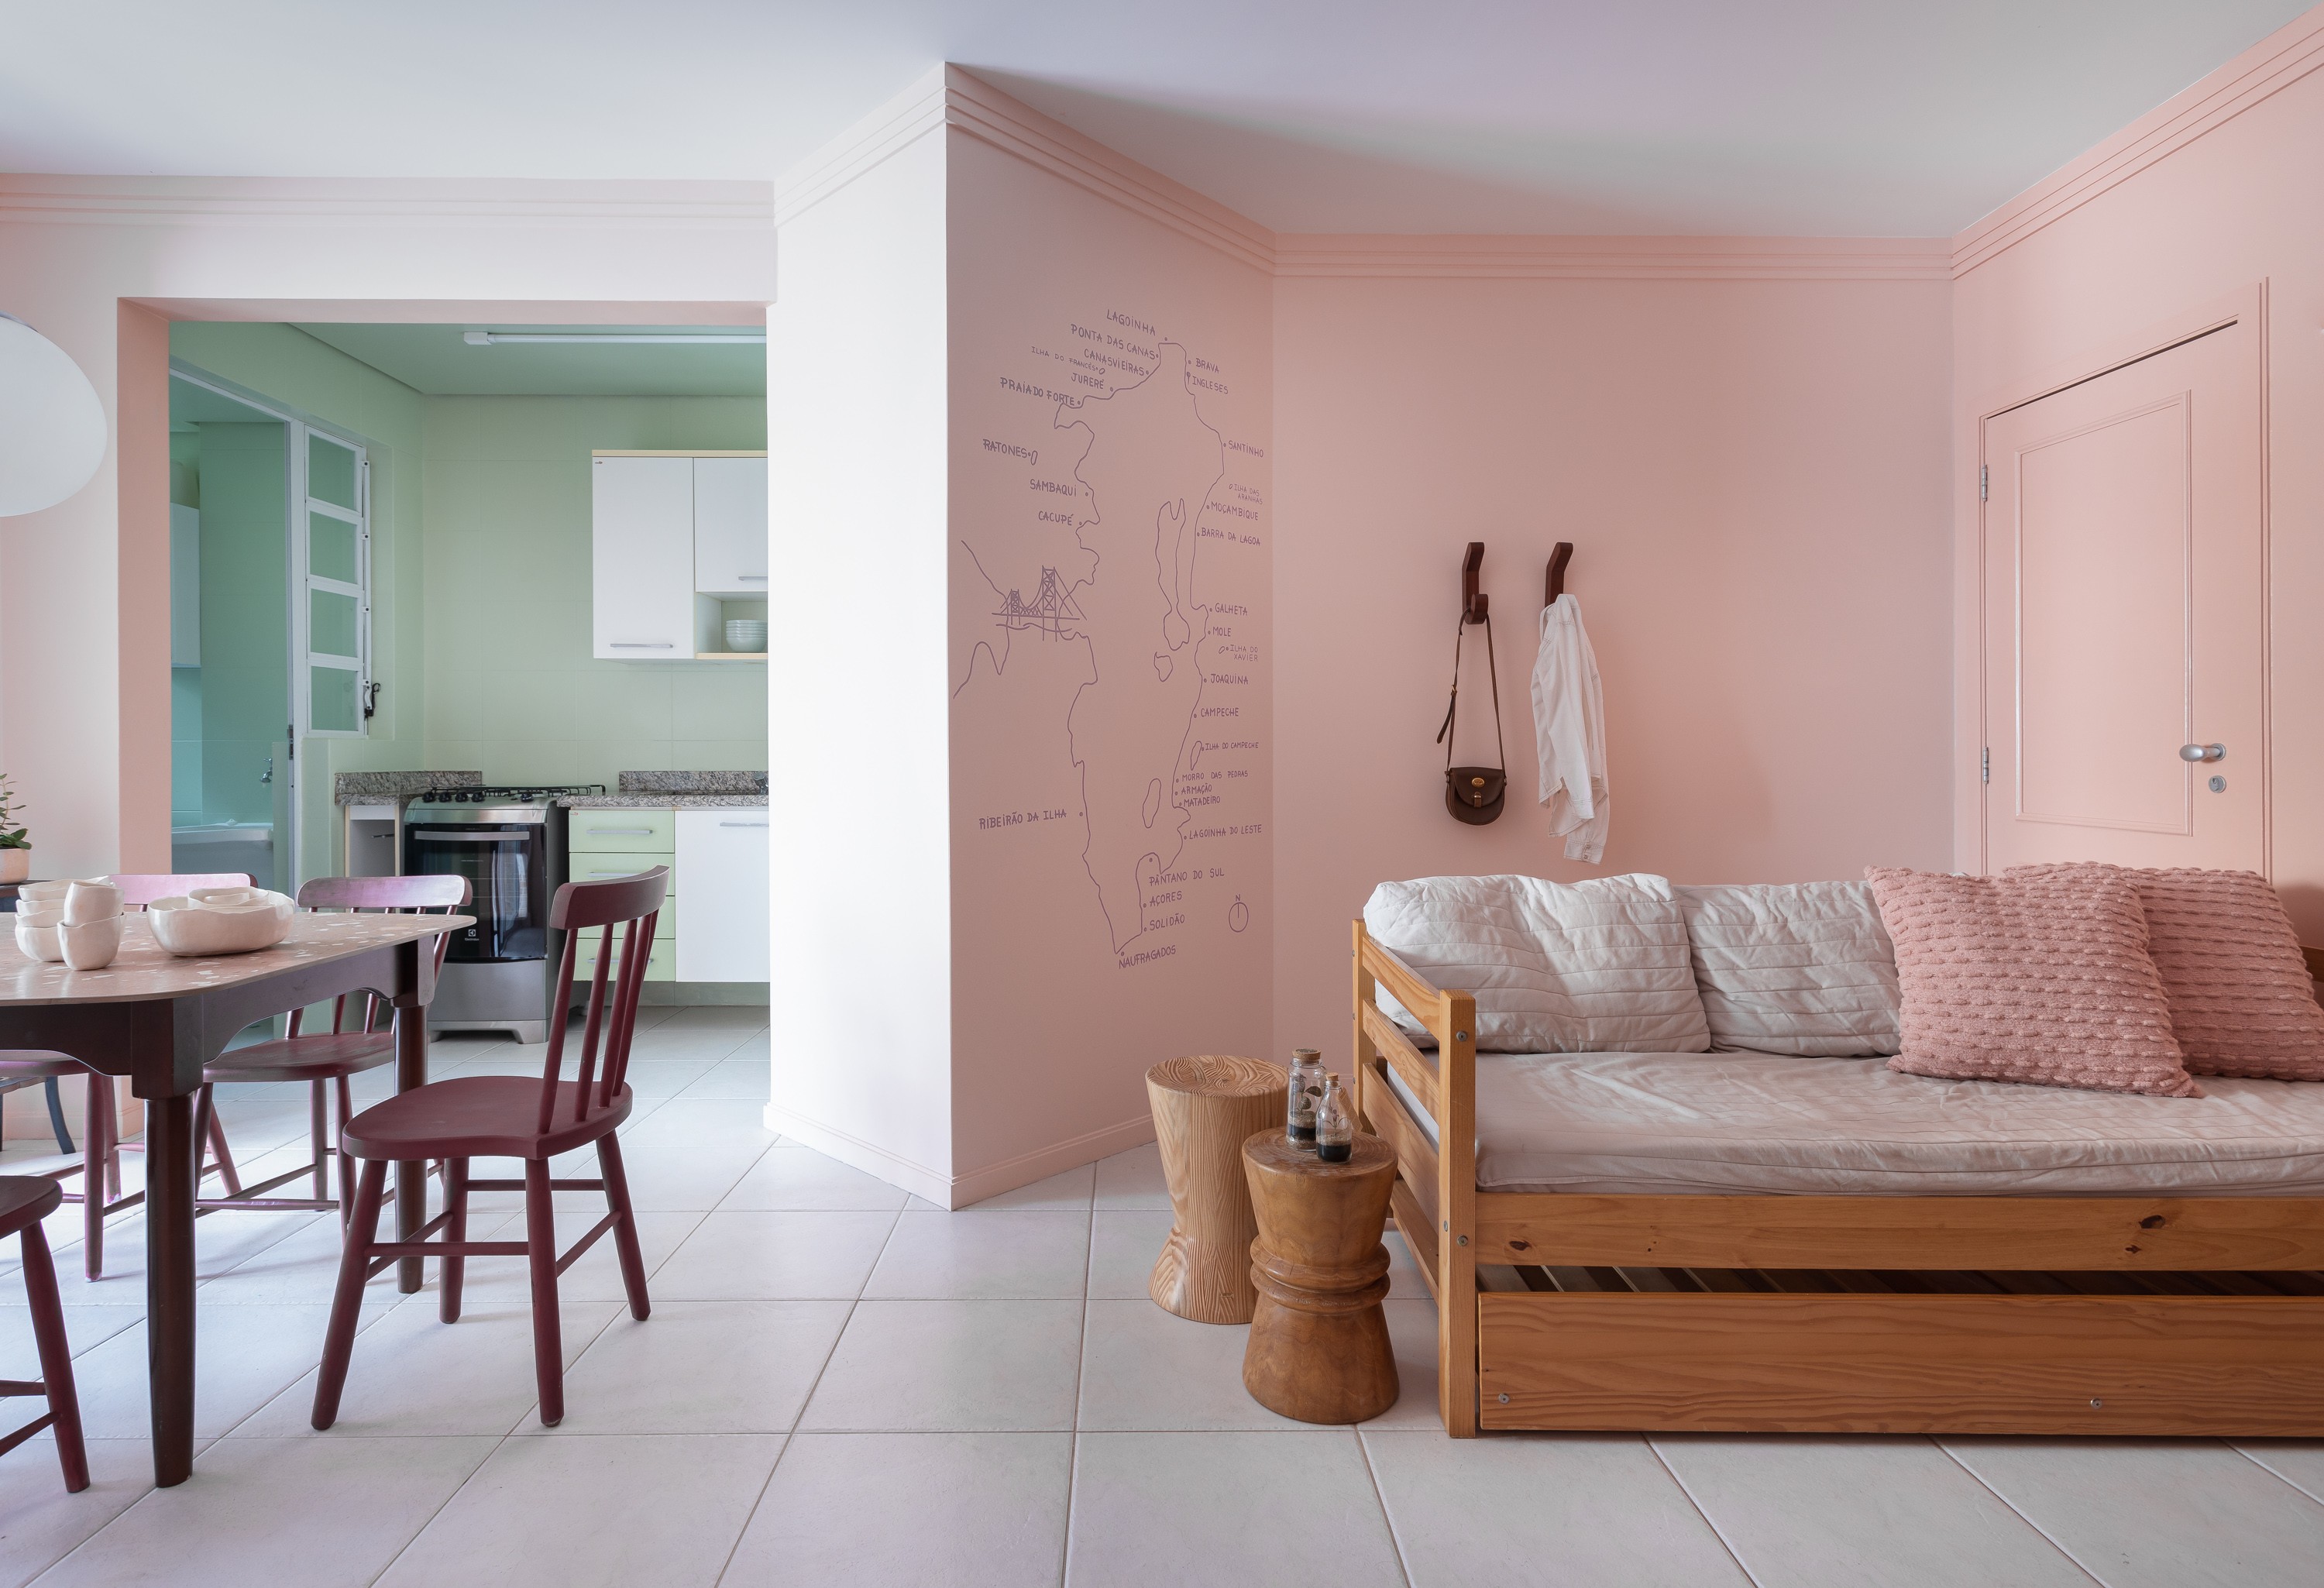 Apartamento é transformado com cores e artesanato: veja antes e depois (Foto: Mariana Boro)